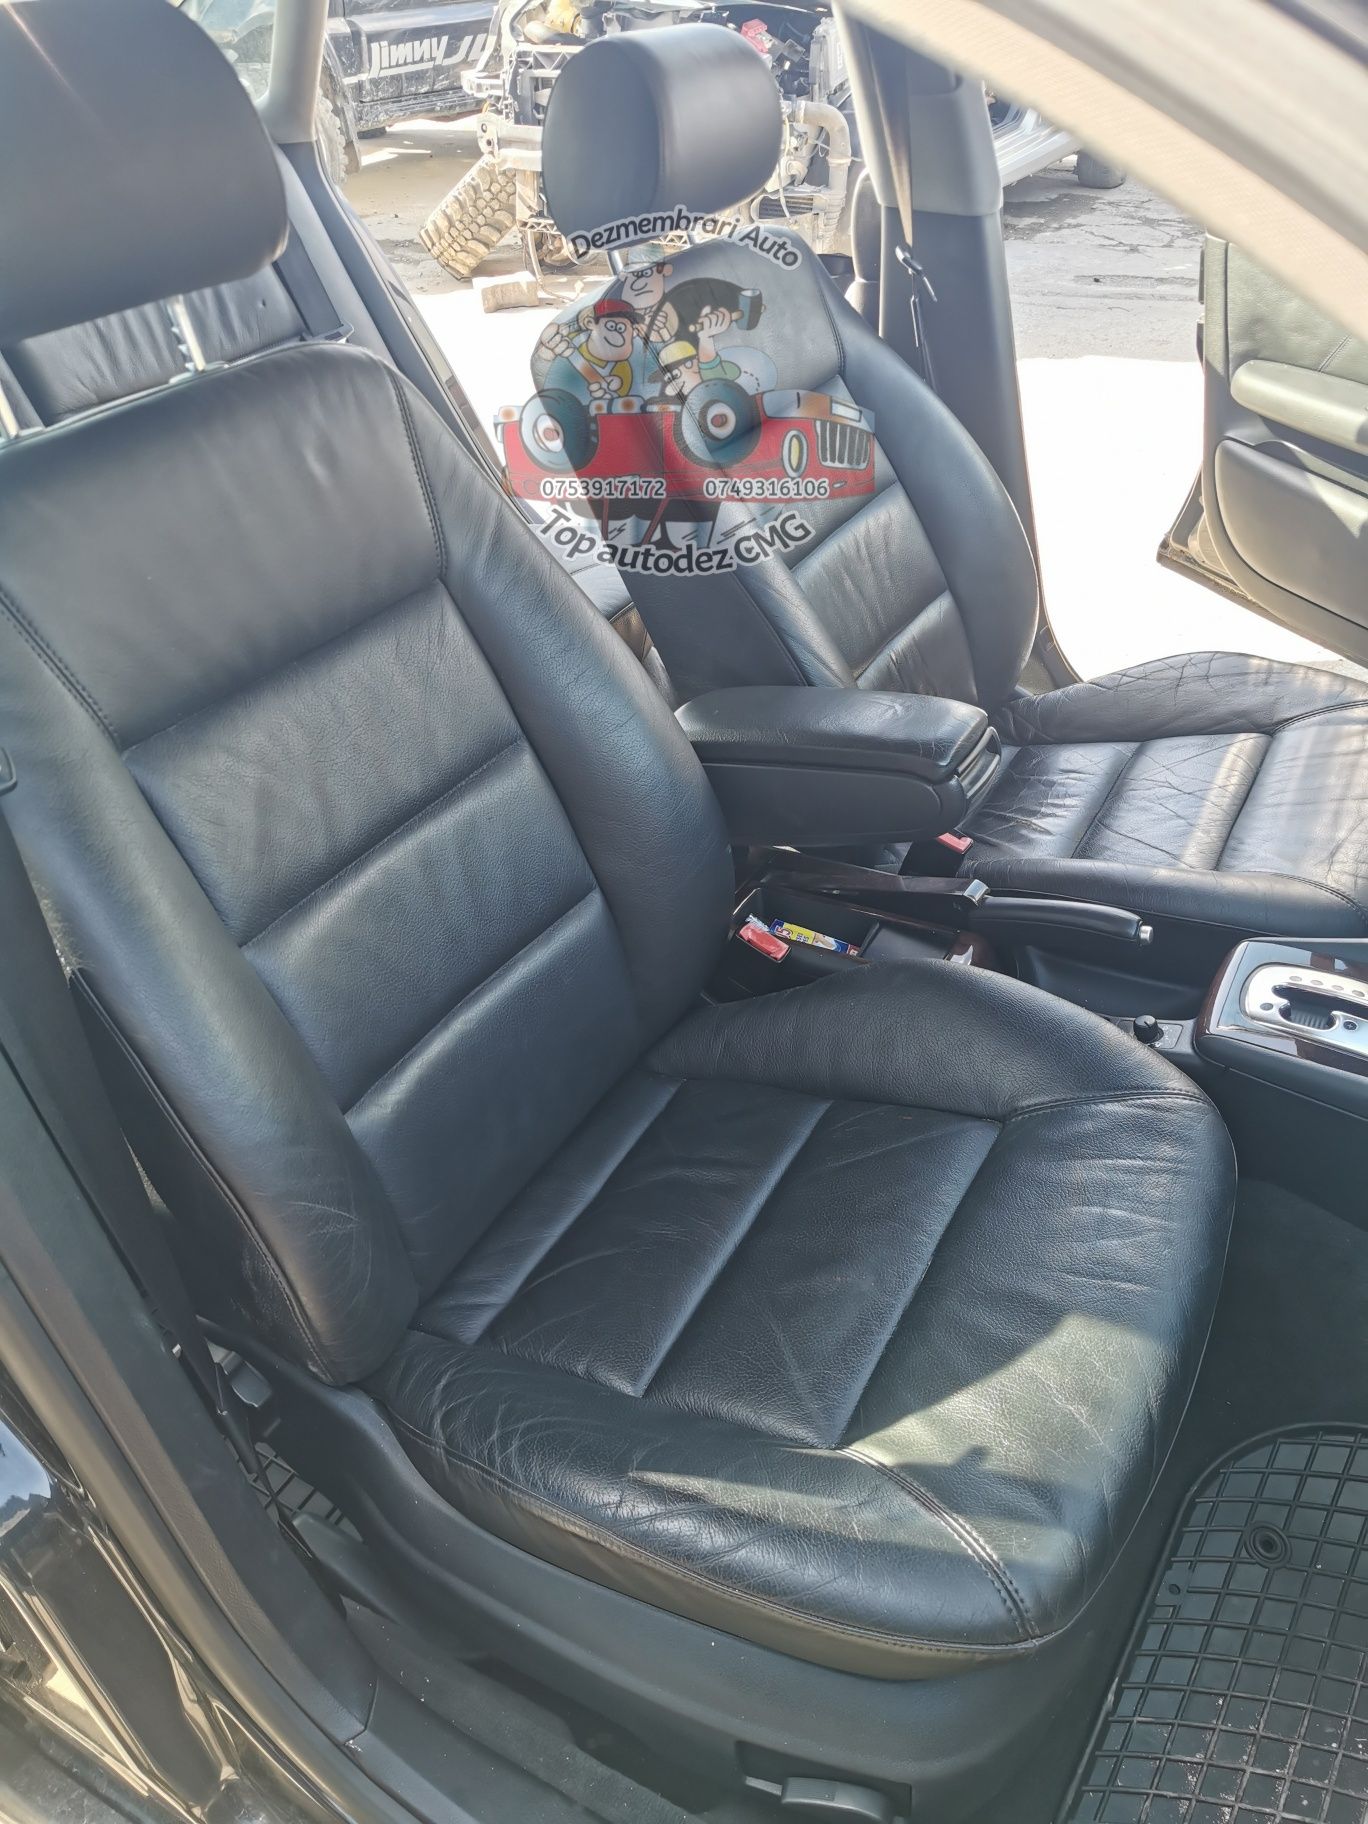 Interior piele Audi A6 C5 berlina negru incalzire scaune și bancheta